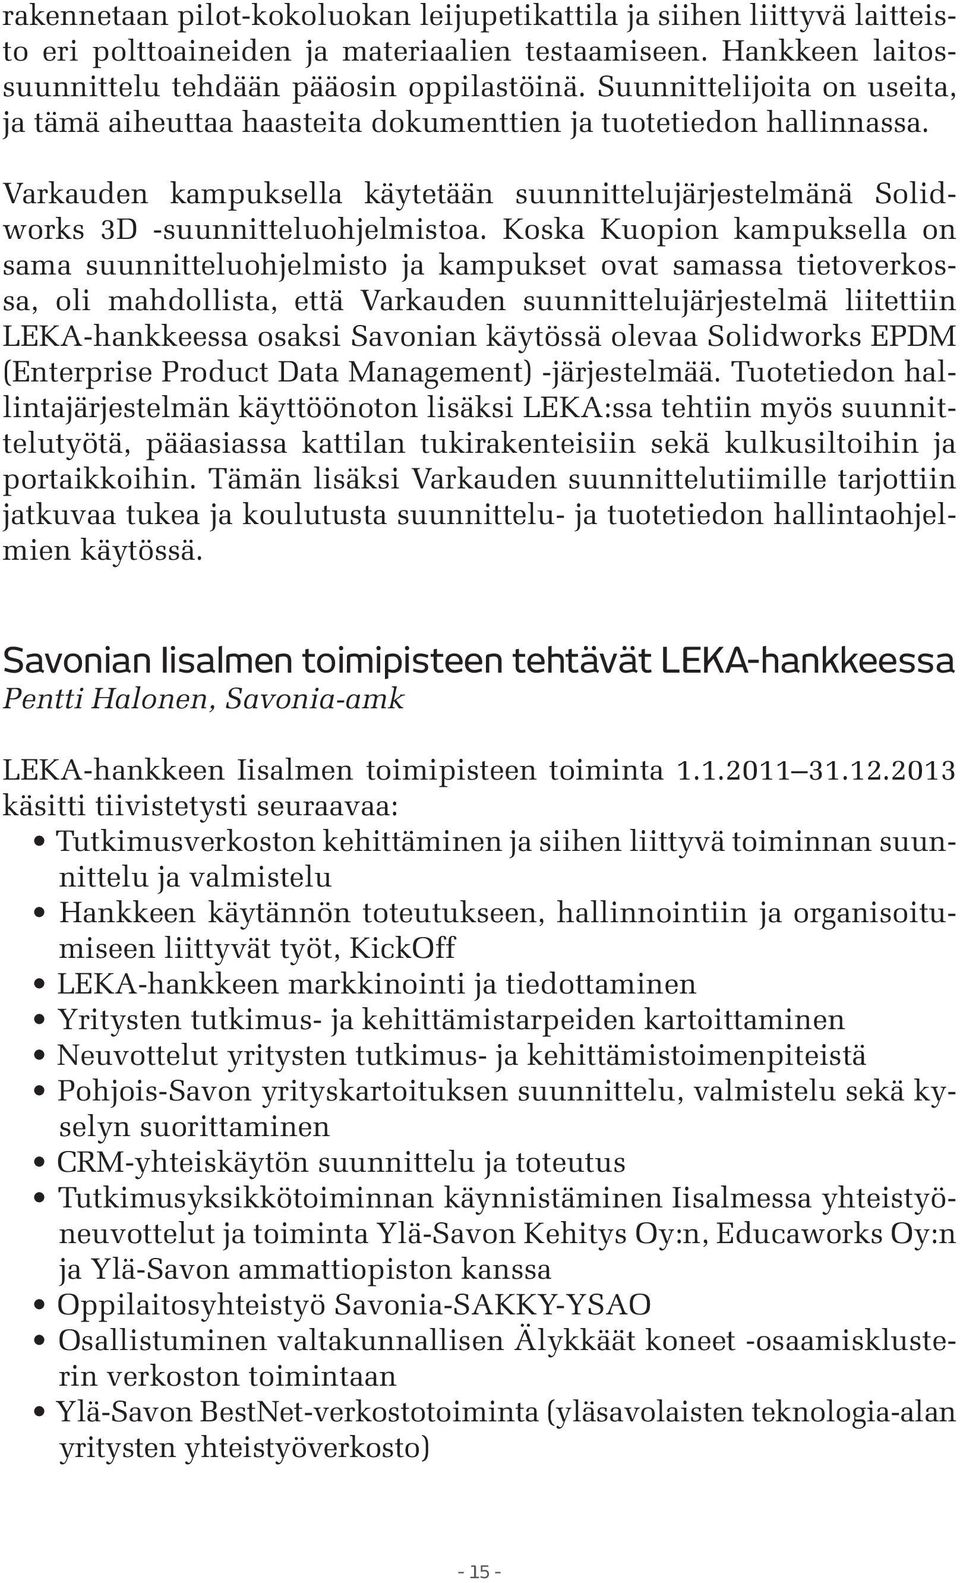 Koska Kuopion kampuksella on sama suunnitteluohjelmisto ja kampukset ovat samassa tietoverkossa, oli mahdollista, että Varkauden suunnittelujärjestelmä liitettiin LEKA-hankkeessa osaksi Savonian